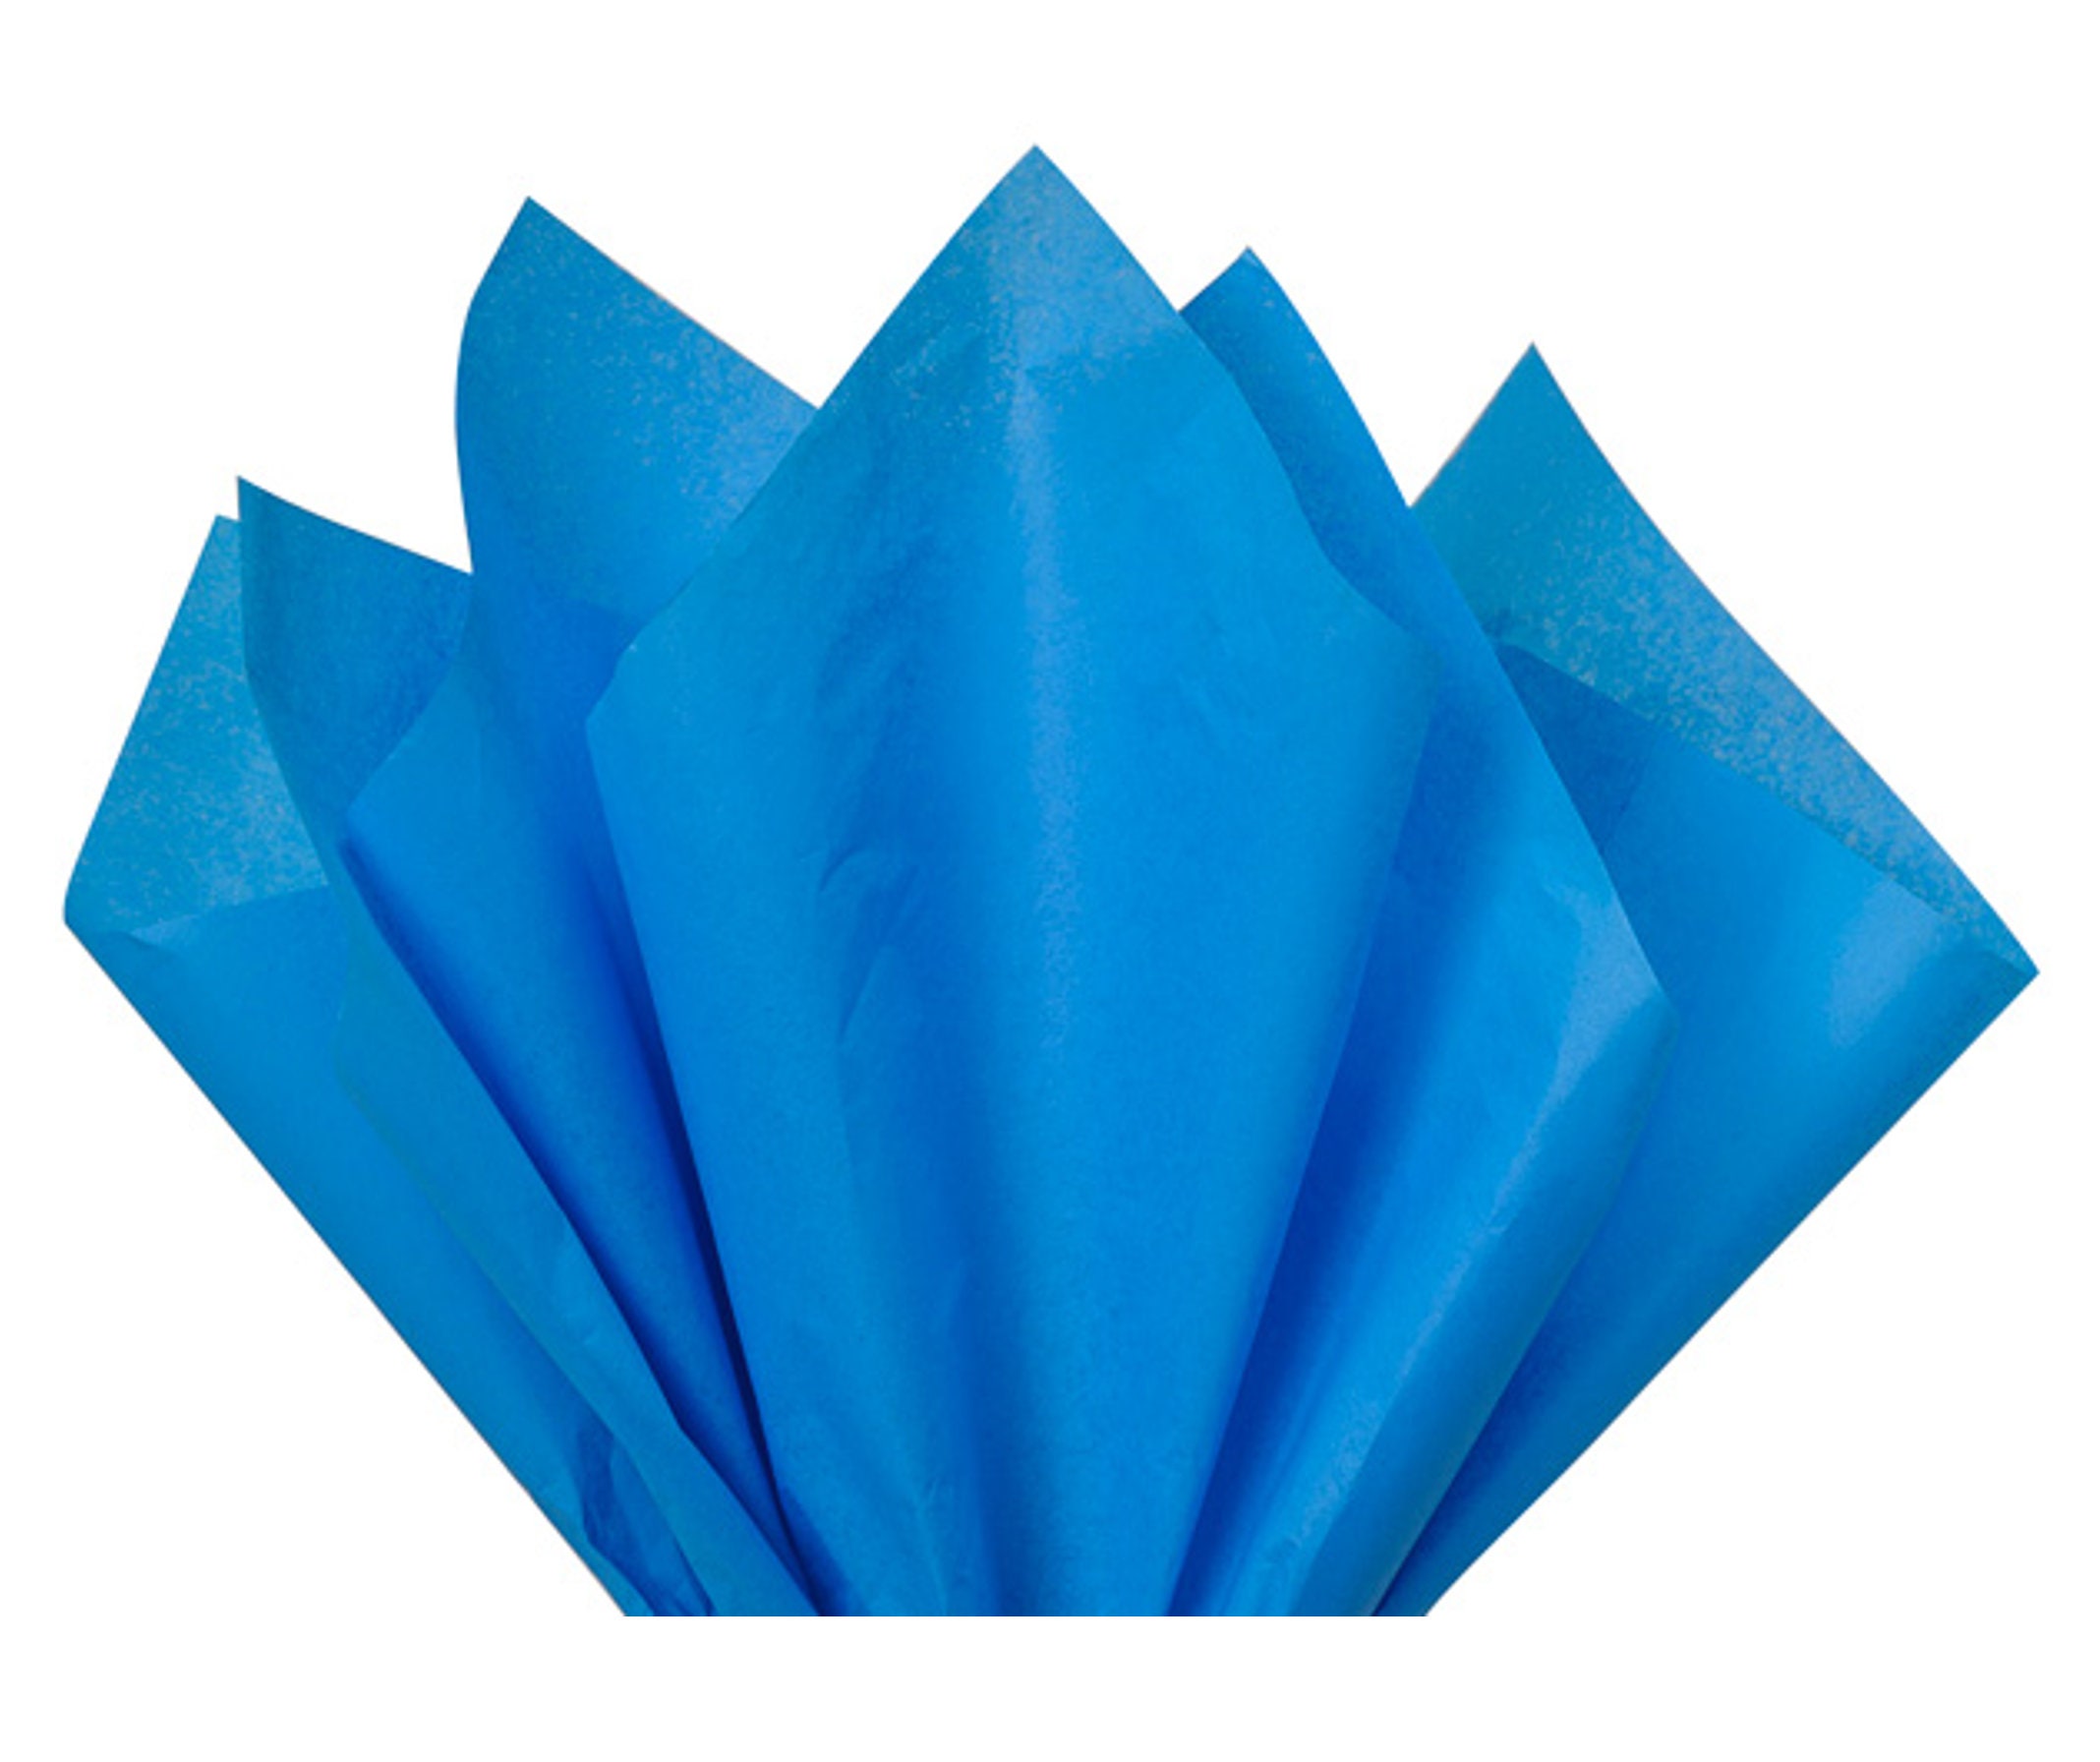  A1 Bakery Supplies Light Blue Tissue Paper 15' x 20